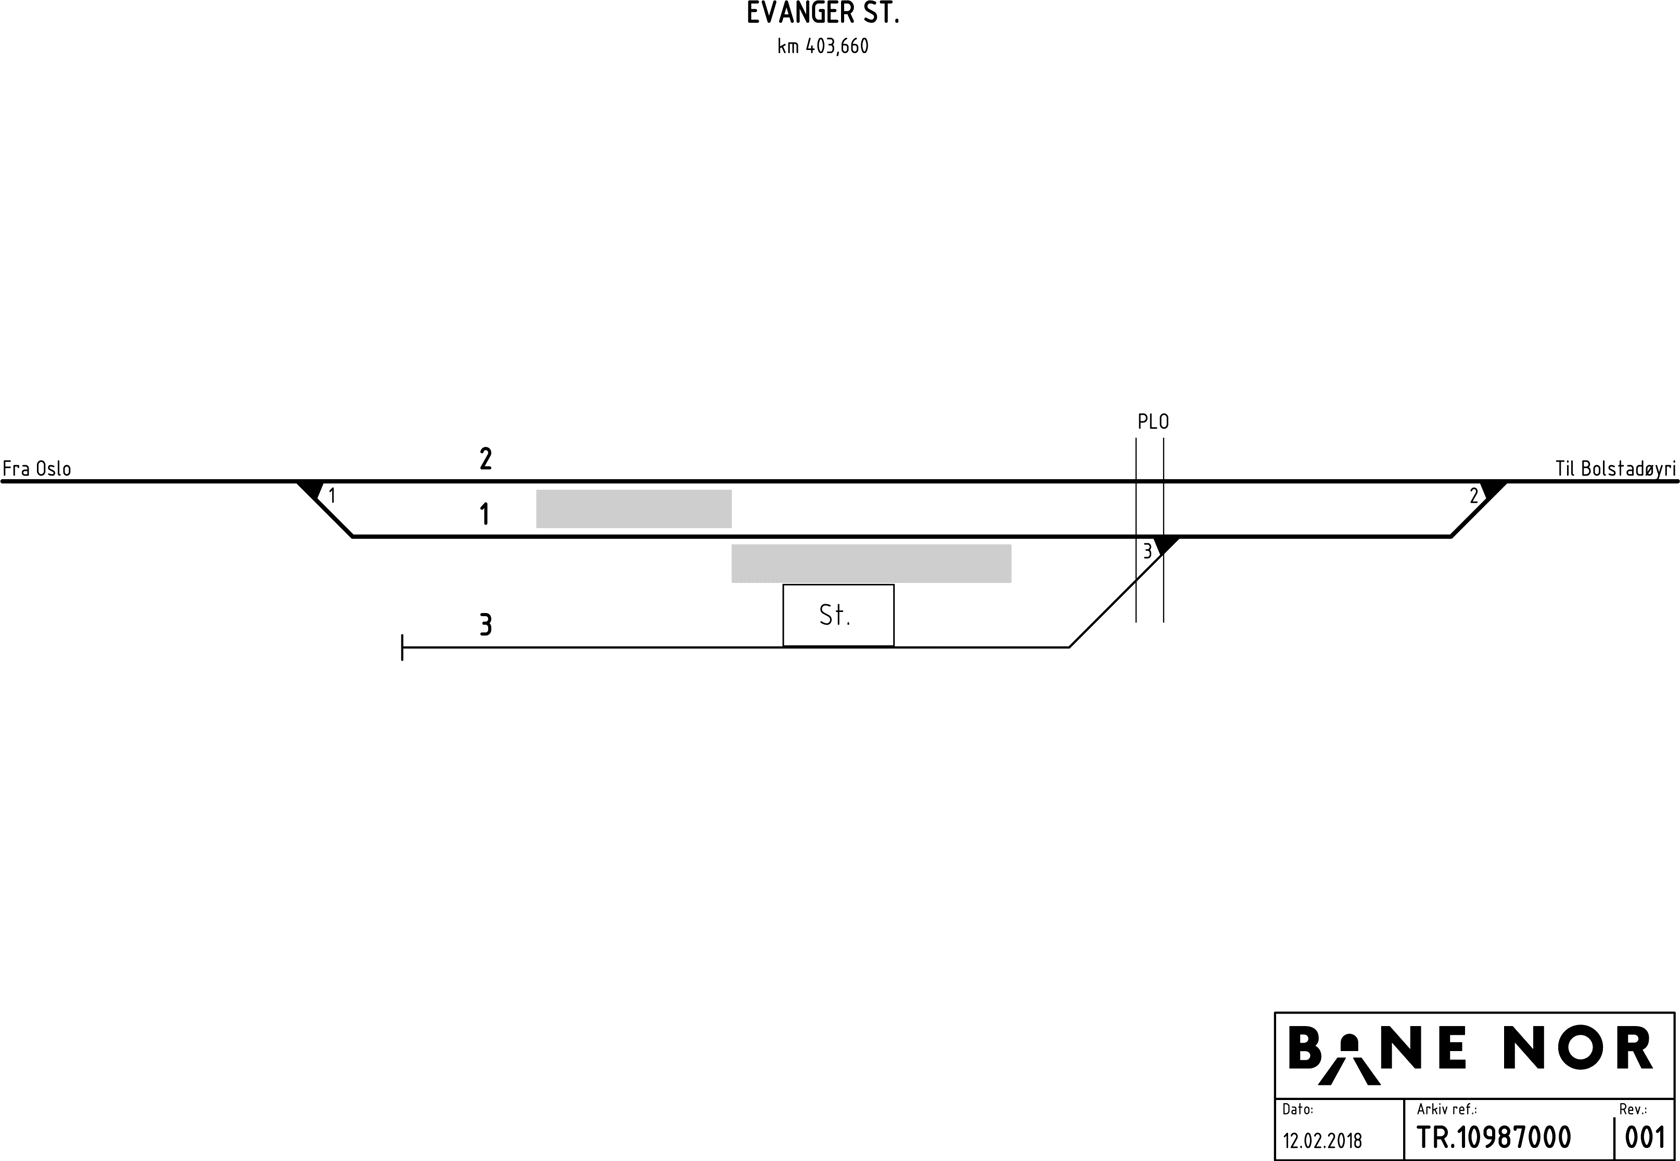 Track plan Evanger station